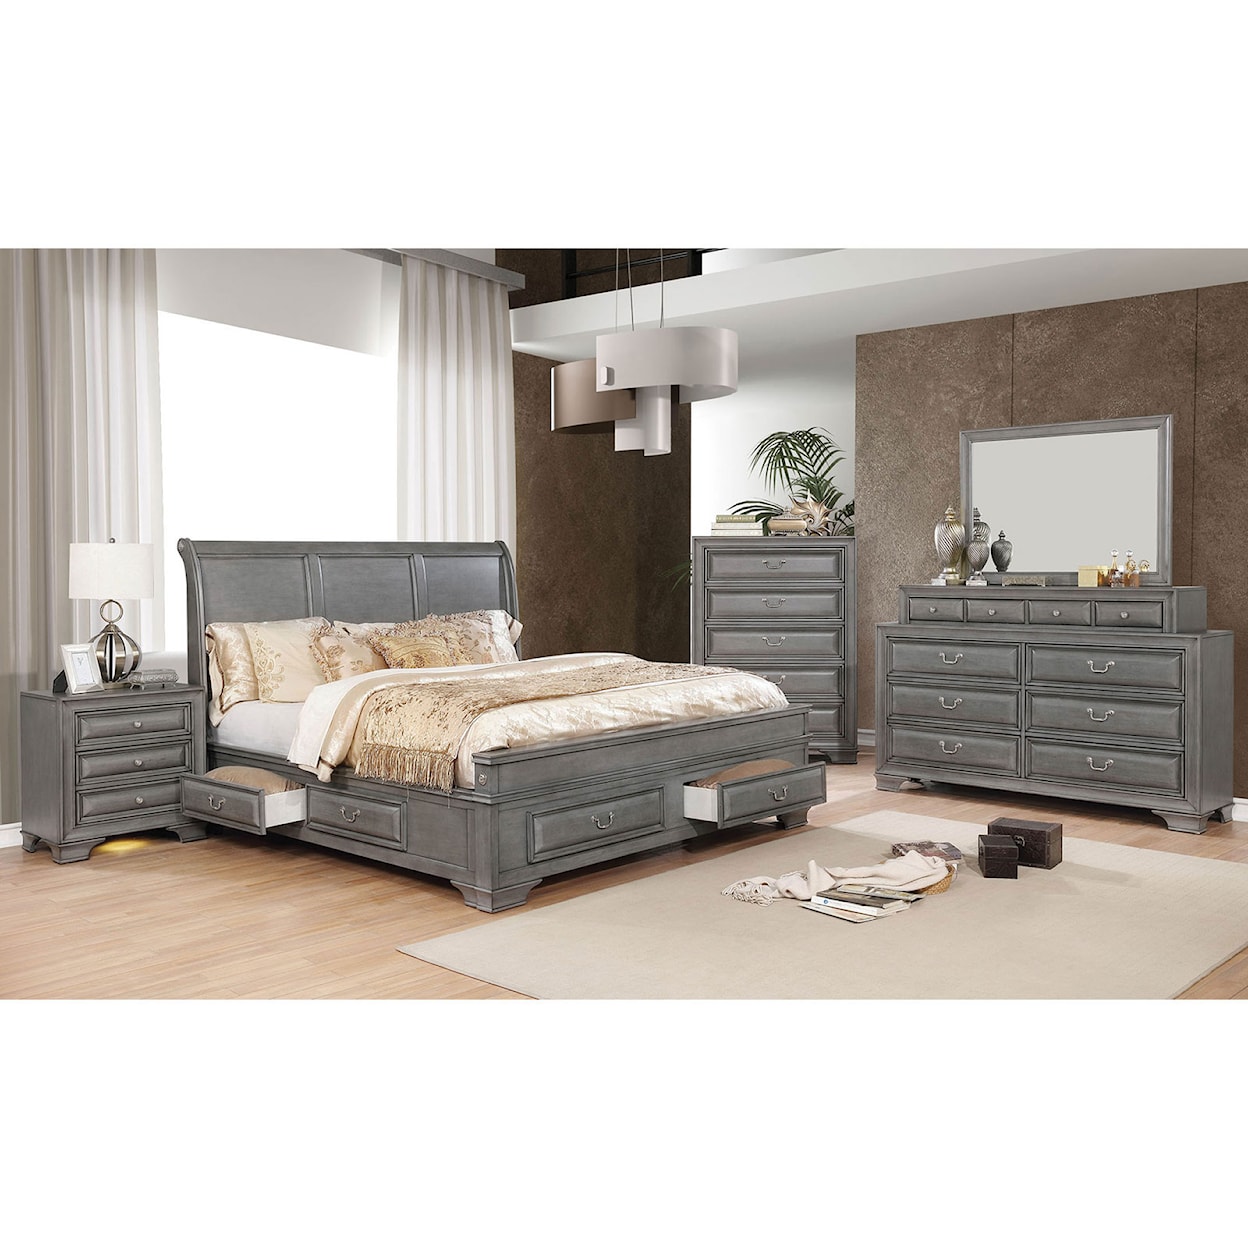 Furniture of America Brandt 5-Piece Queen Bedroom Set